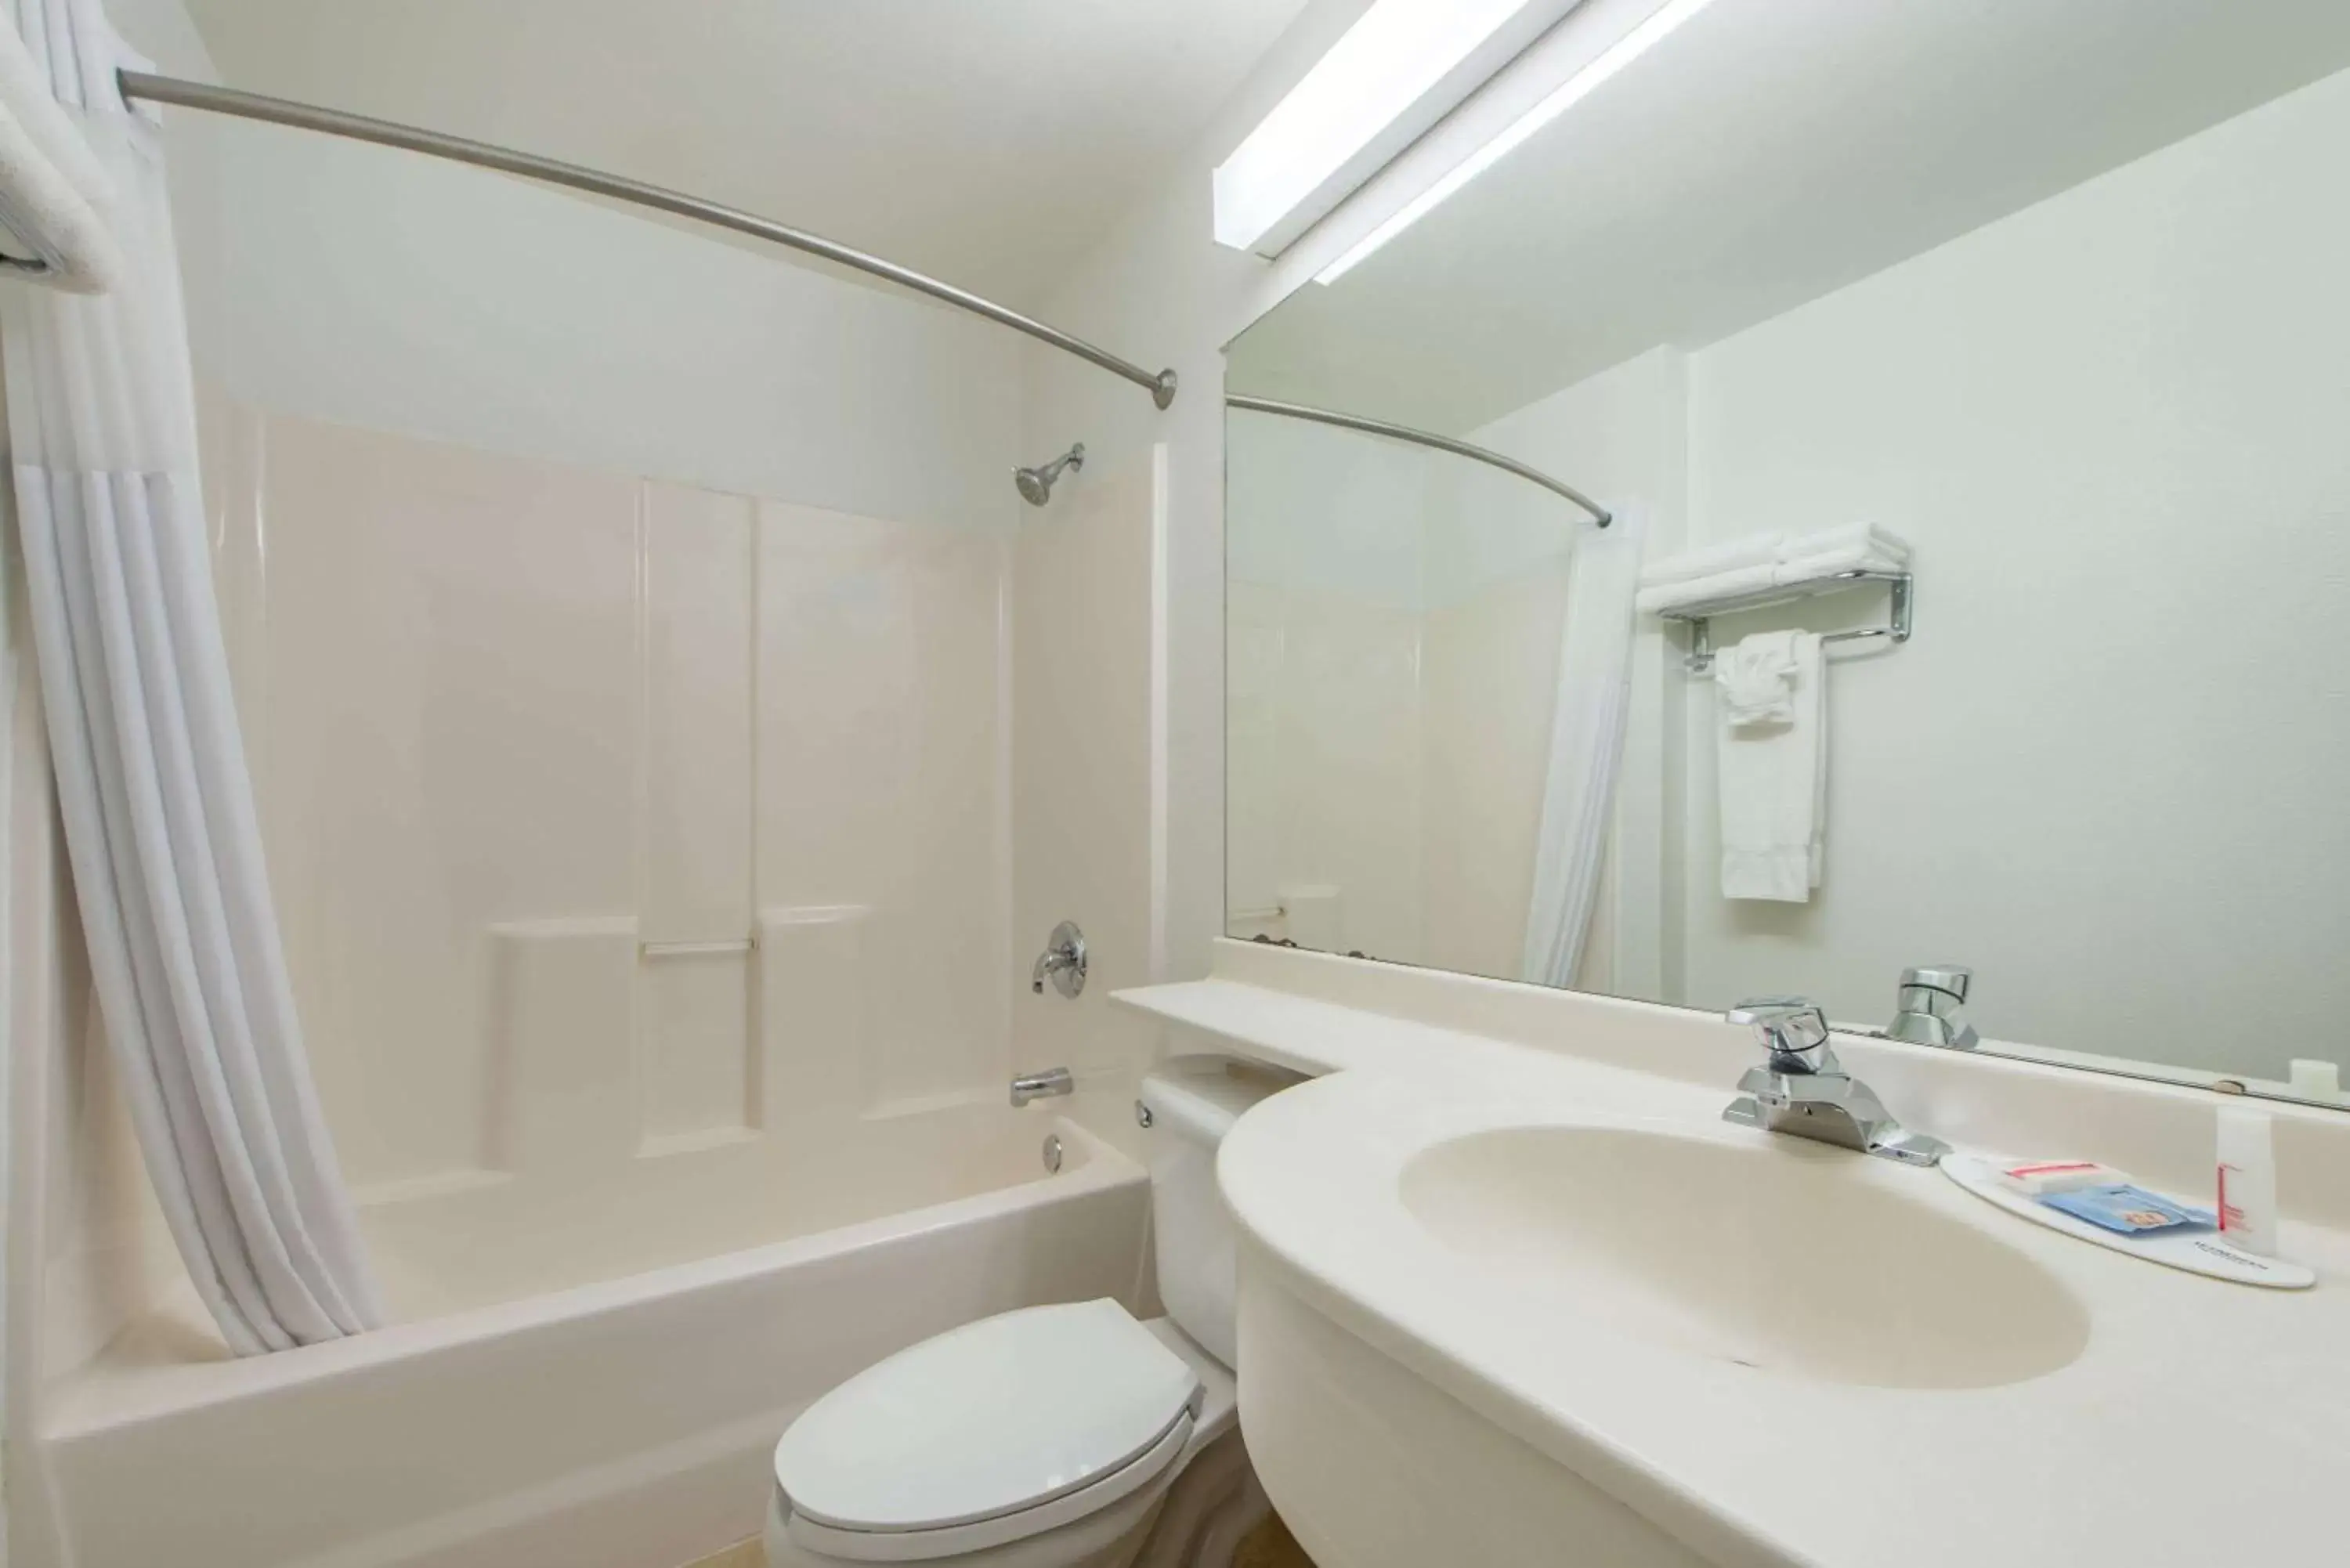 Bathroom in Microtel Inn & Suites